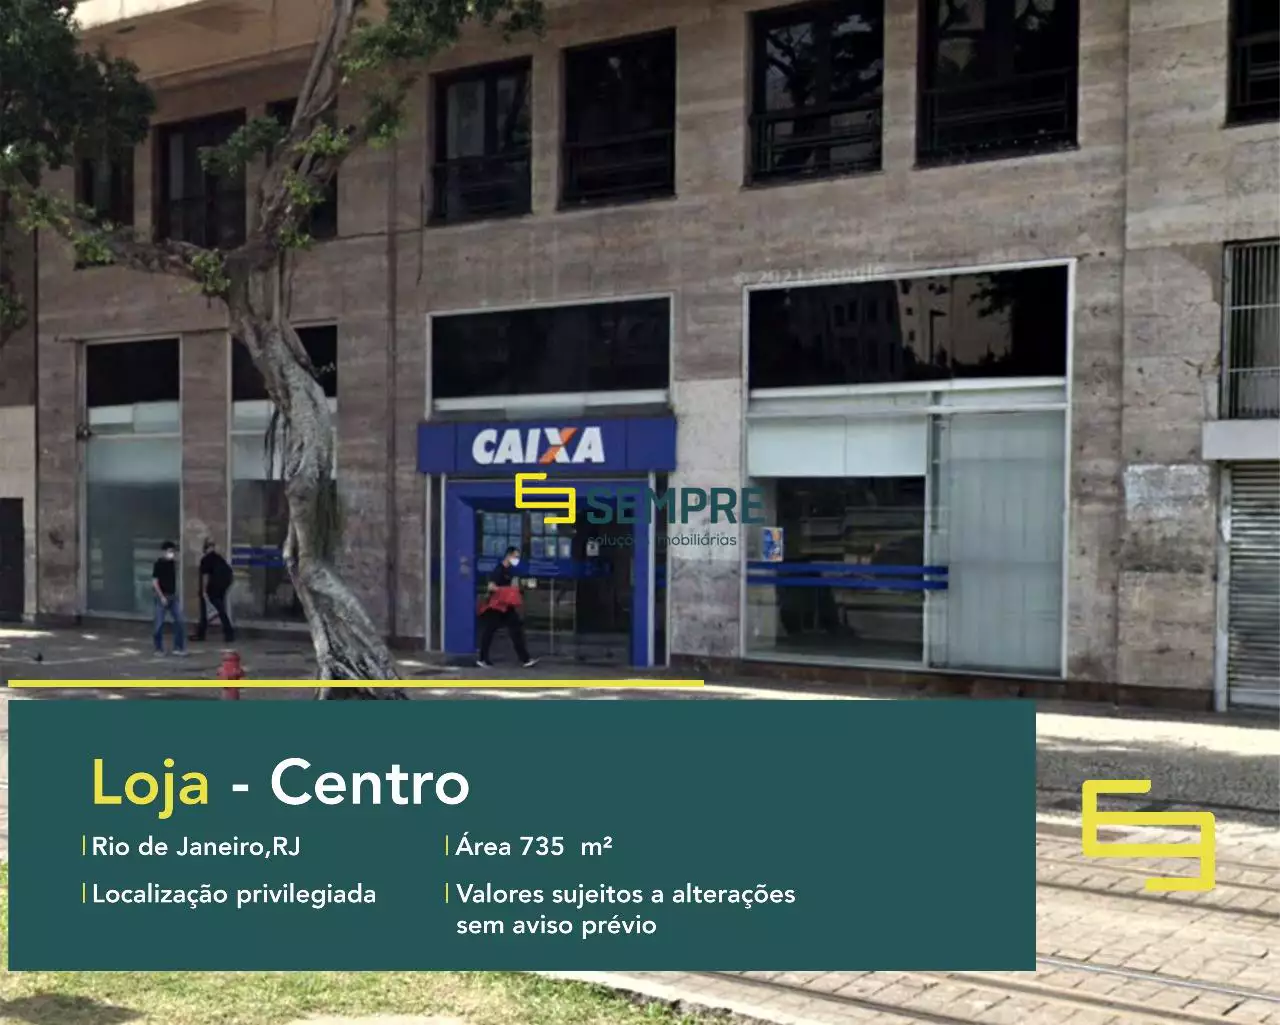 Loja para alugar no Centro do RJ, em excelente localização. O estabelecimento comercial conta com área de 735 m².